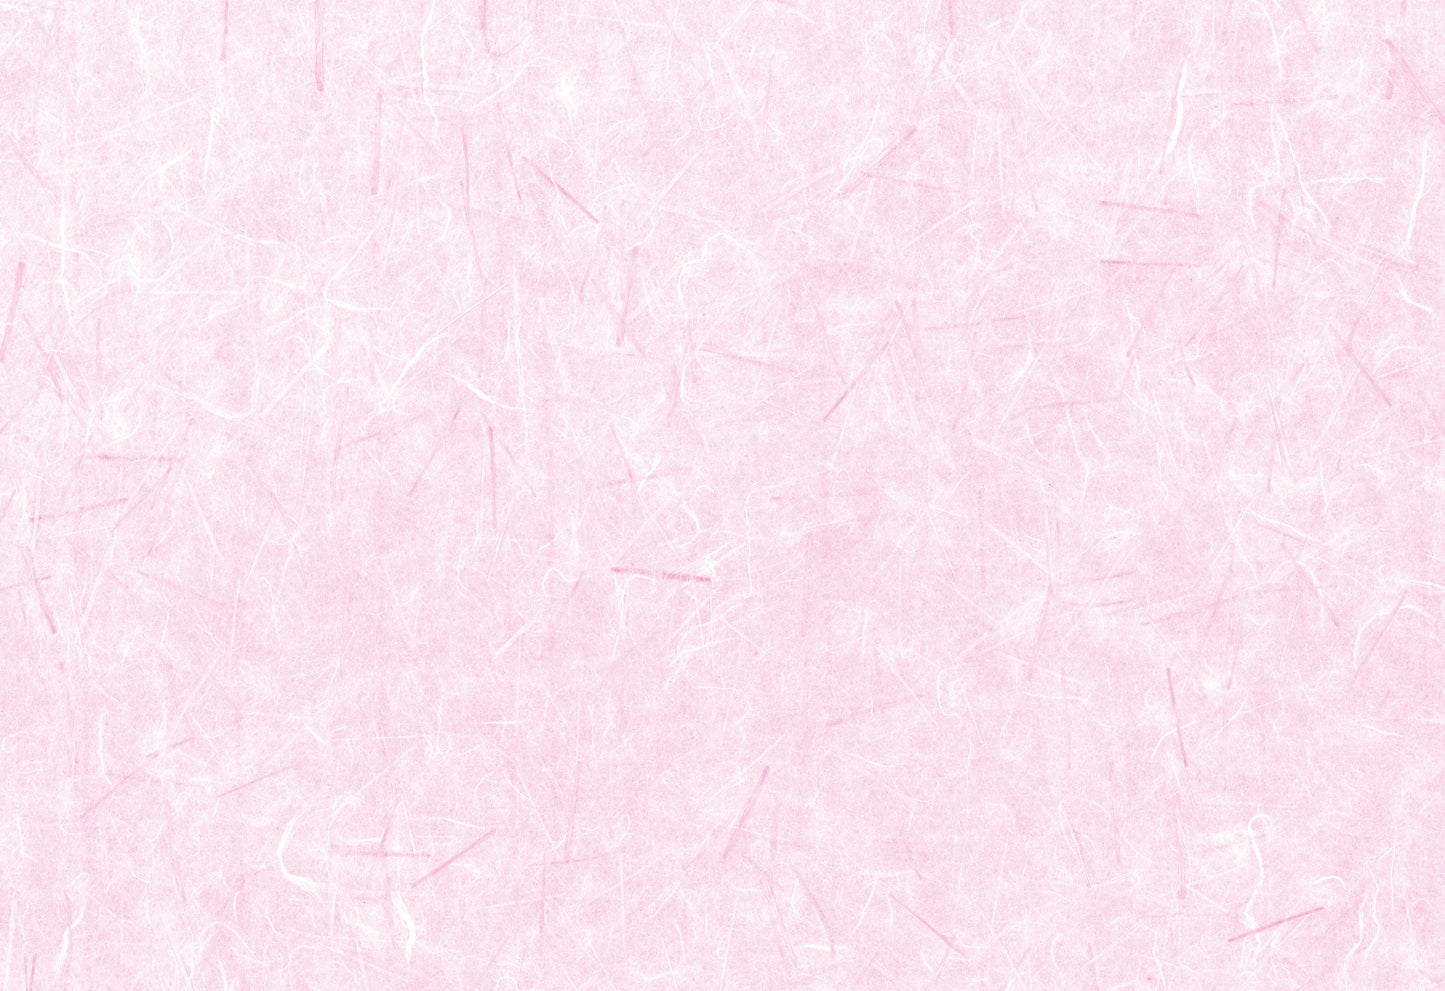 3602-0011　テーブルマット  38cm 100枚入
(38×26cm, 無蛍光,上質紙70g/㎡)
ピンク・オレンジ・黄色系